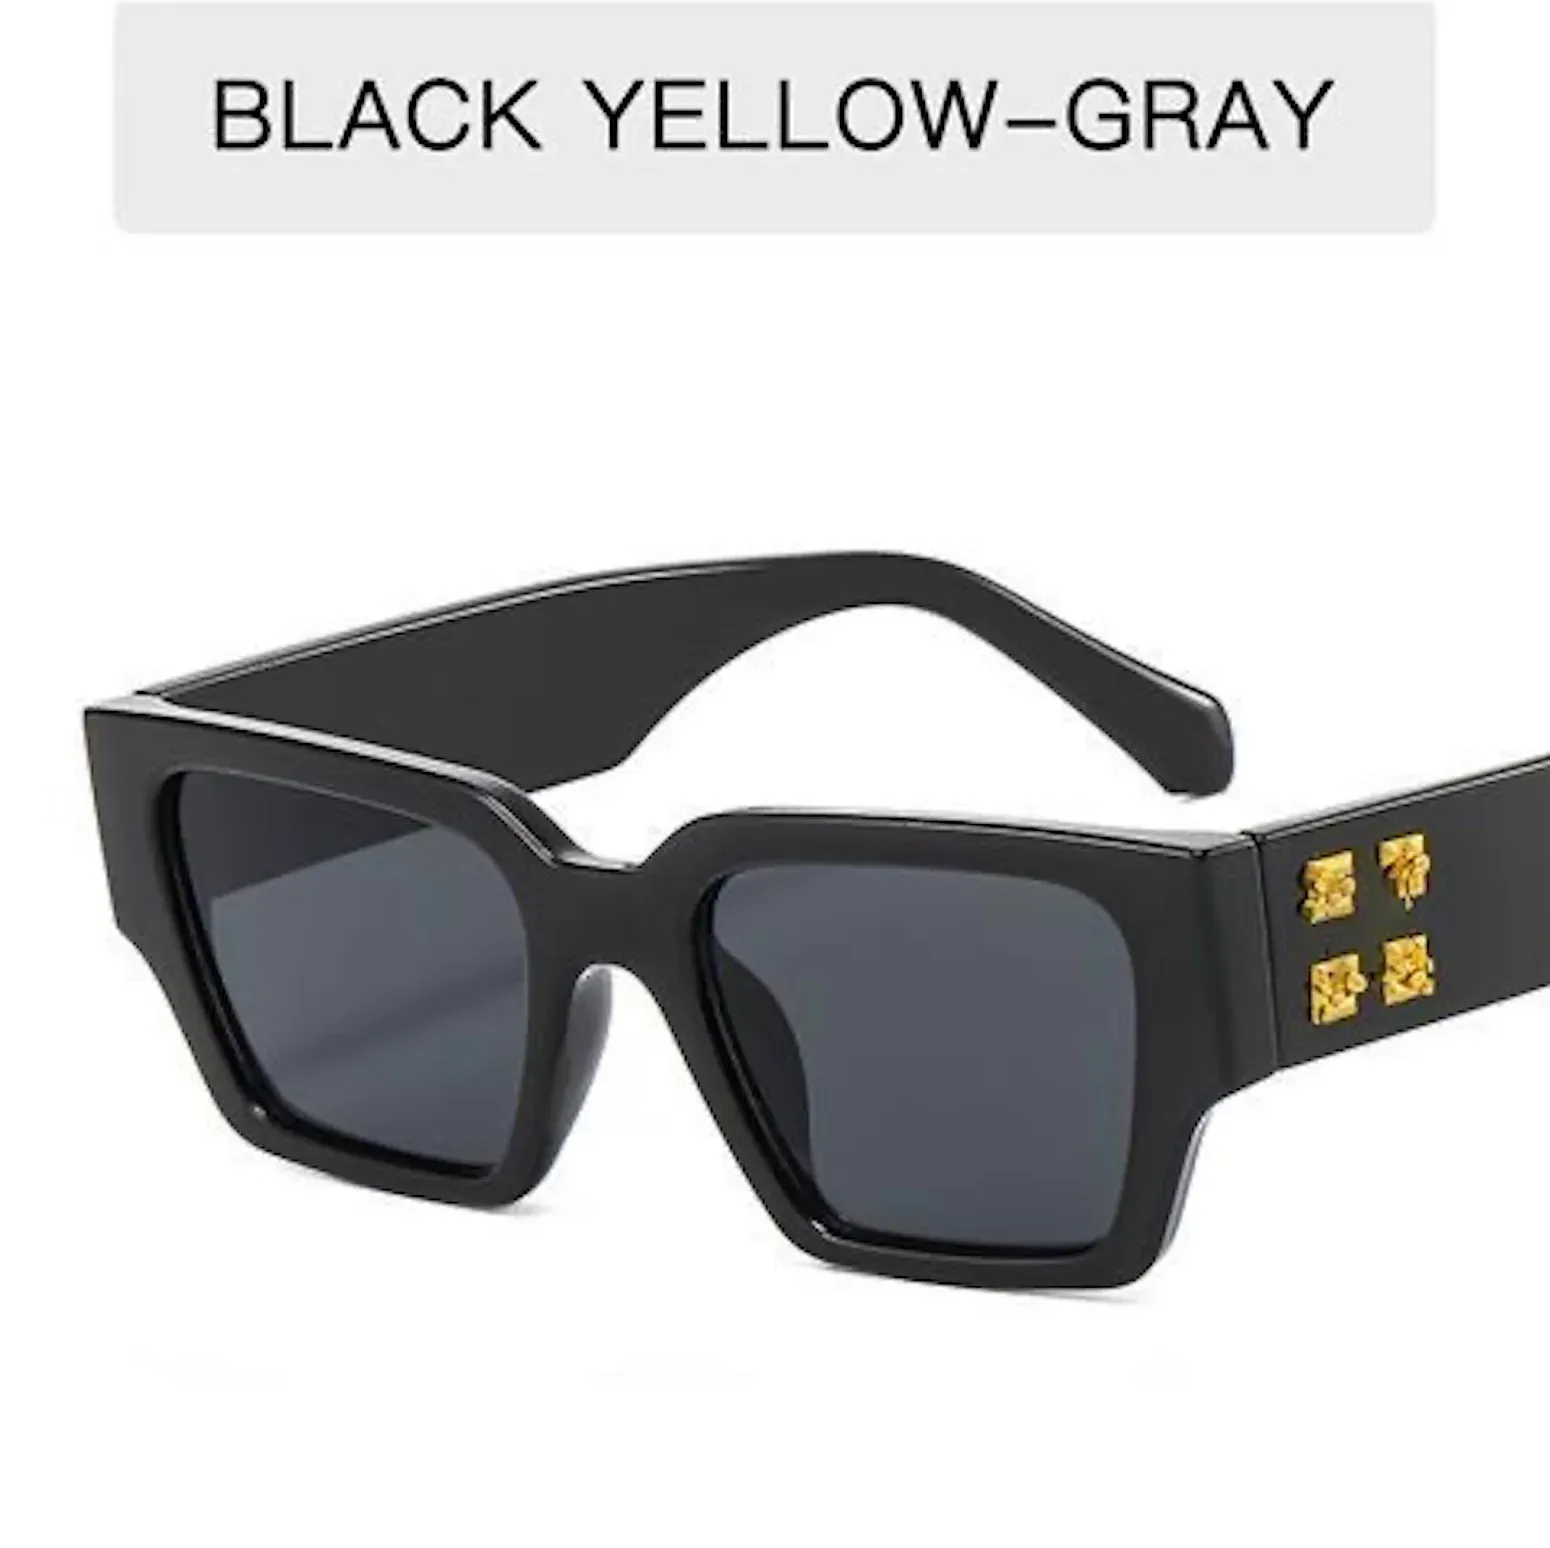 Мультистиль Off Fashion X Дизайнерские солнцезащитные очки для мужчин и женщин Высокое качество Солнцезащитные очки Goggle Beach Adumbral Многоцветный вариант